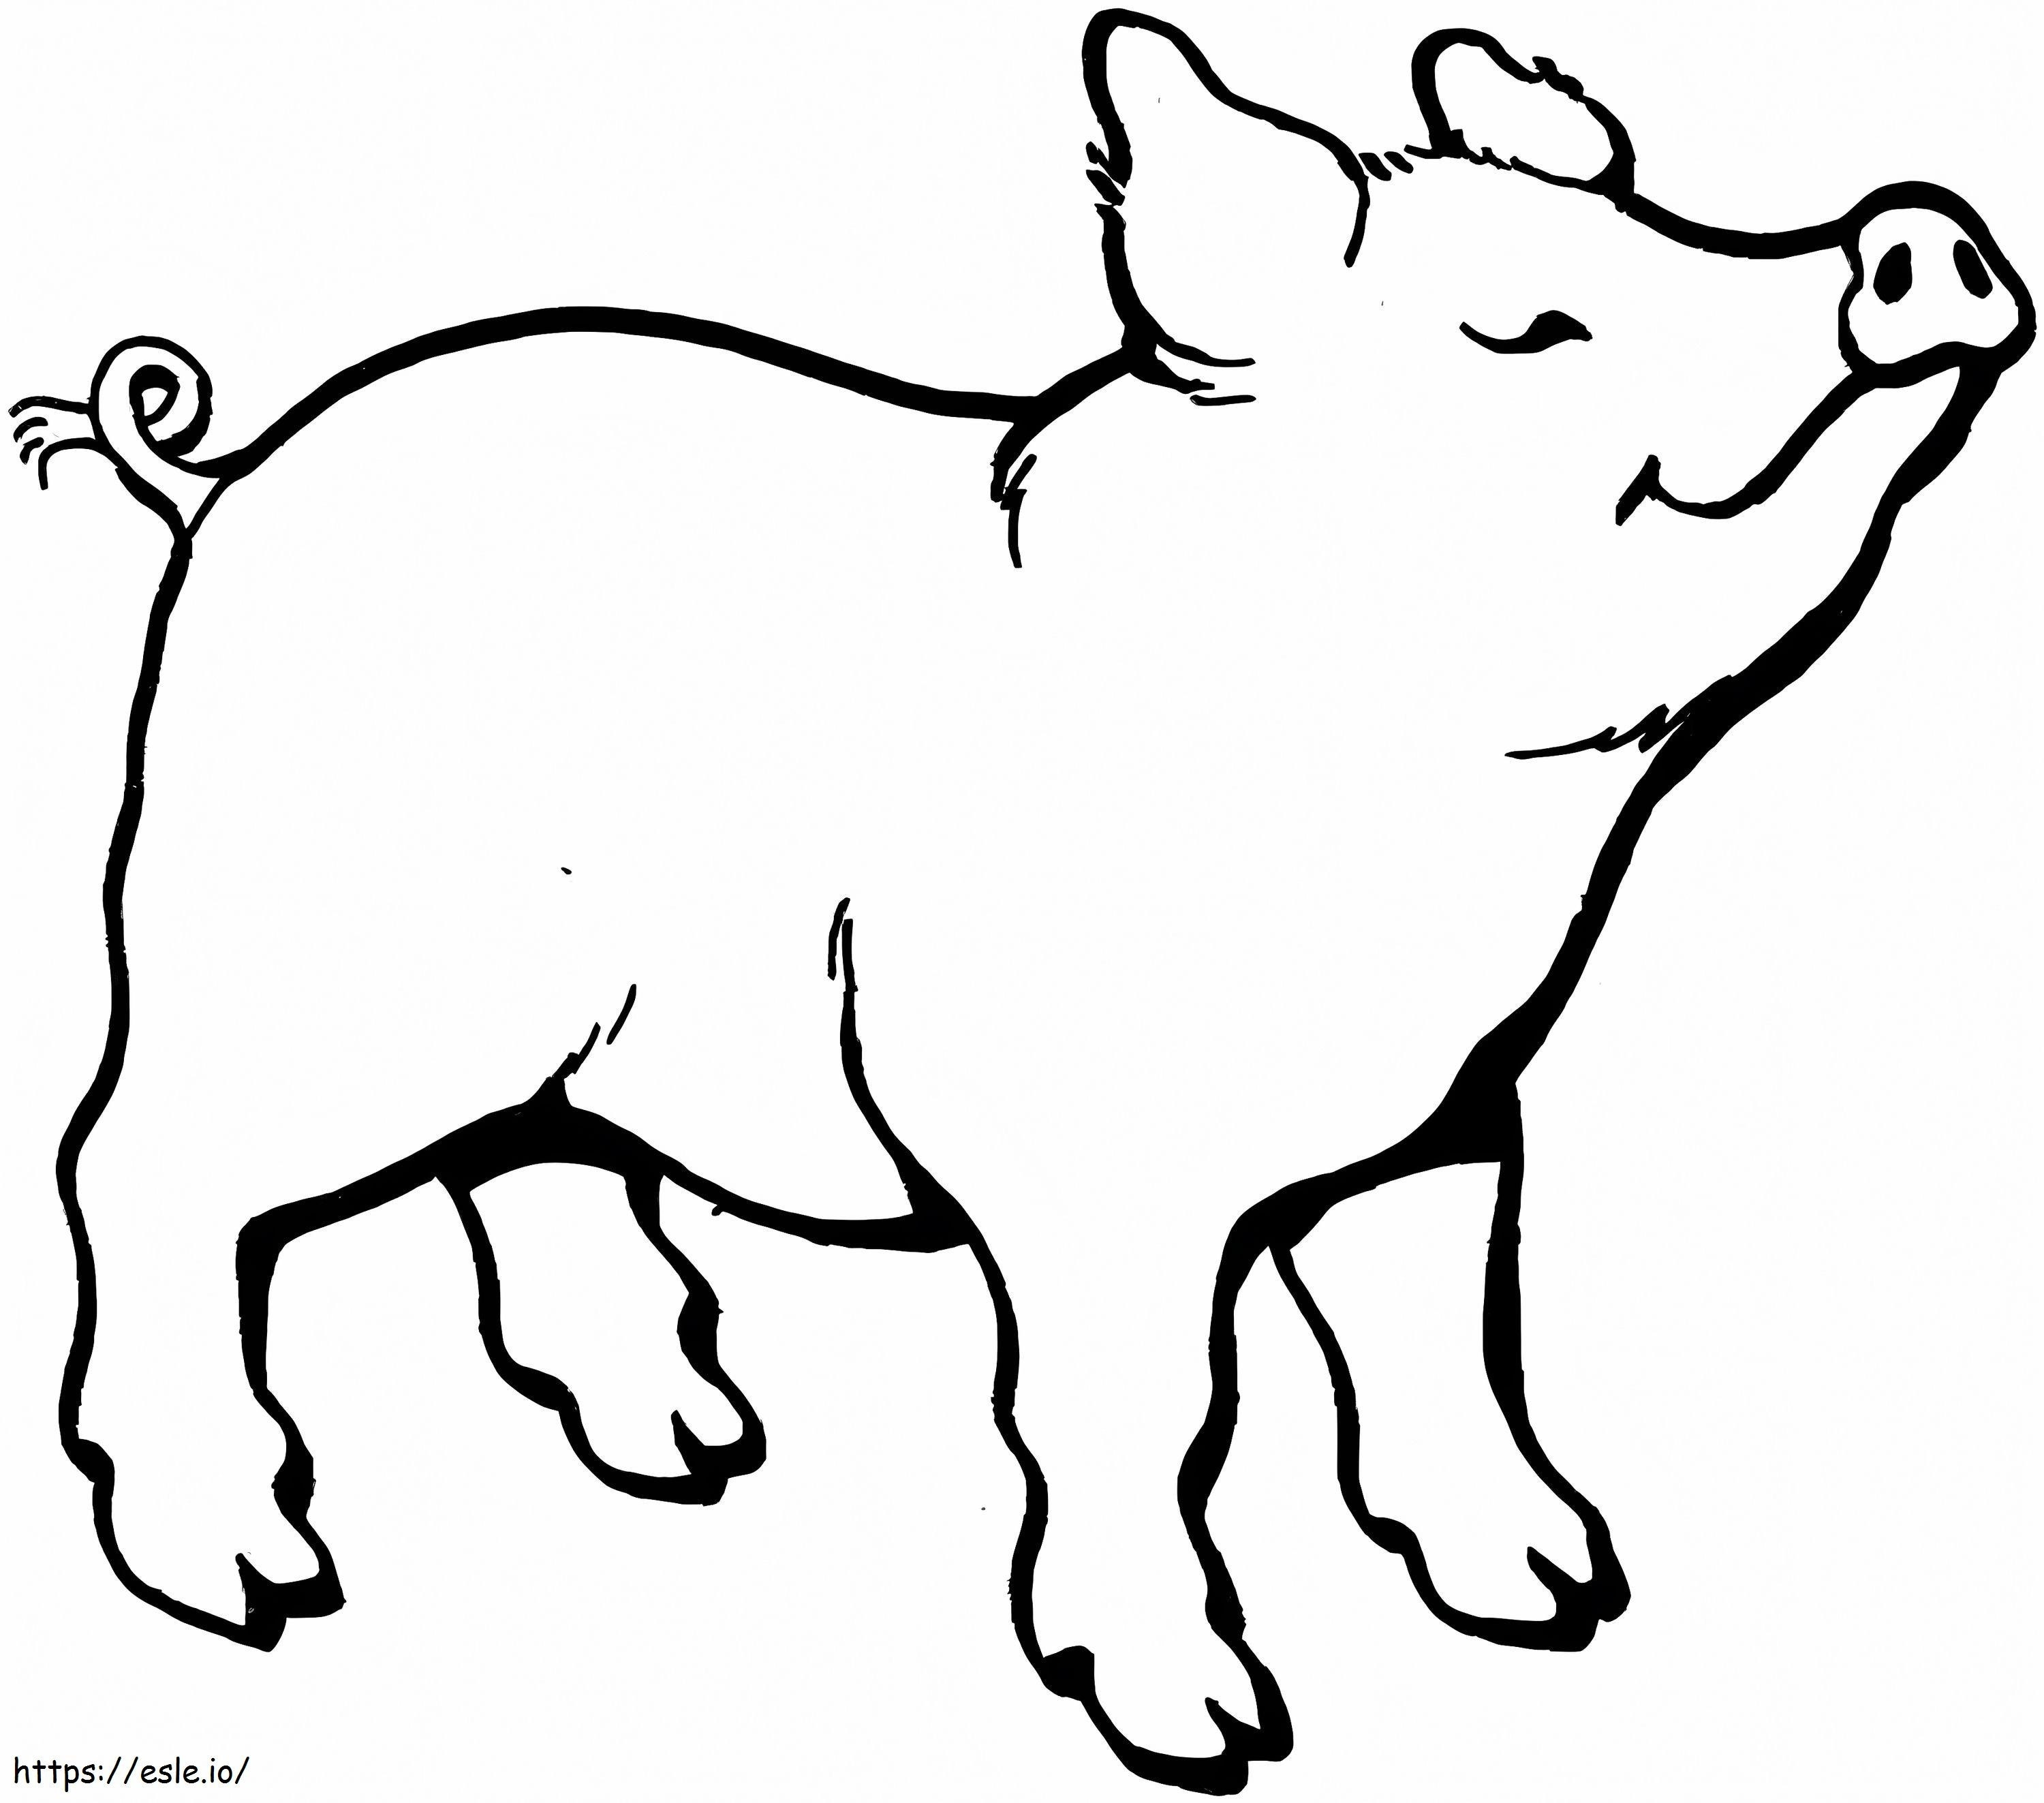 Das Schwein riecht etwas ausmalbilder